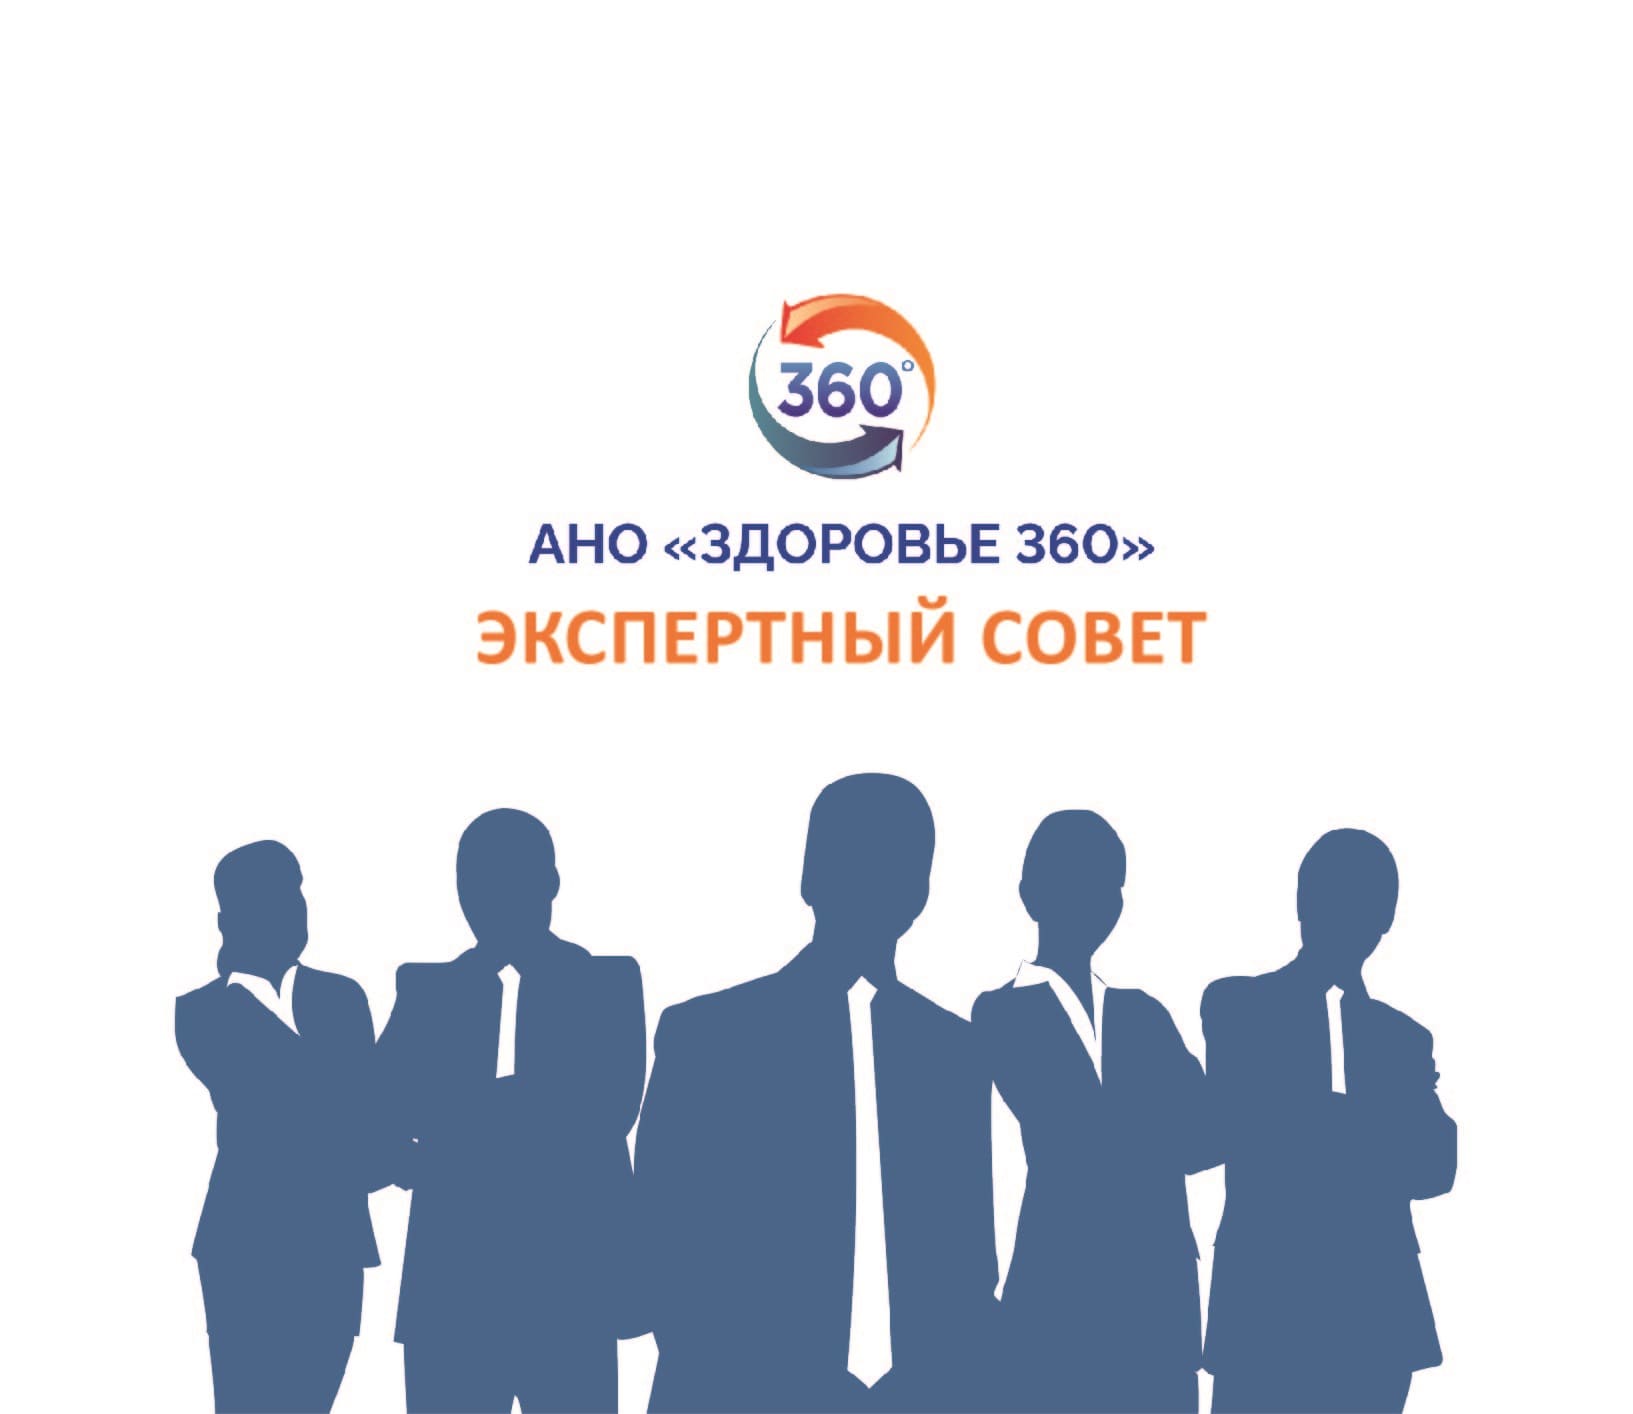 13 июля в РСПП состоялось первое заседание на тему формирования Экспертного совета АНО «Здоровье 360»